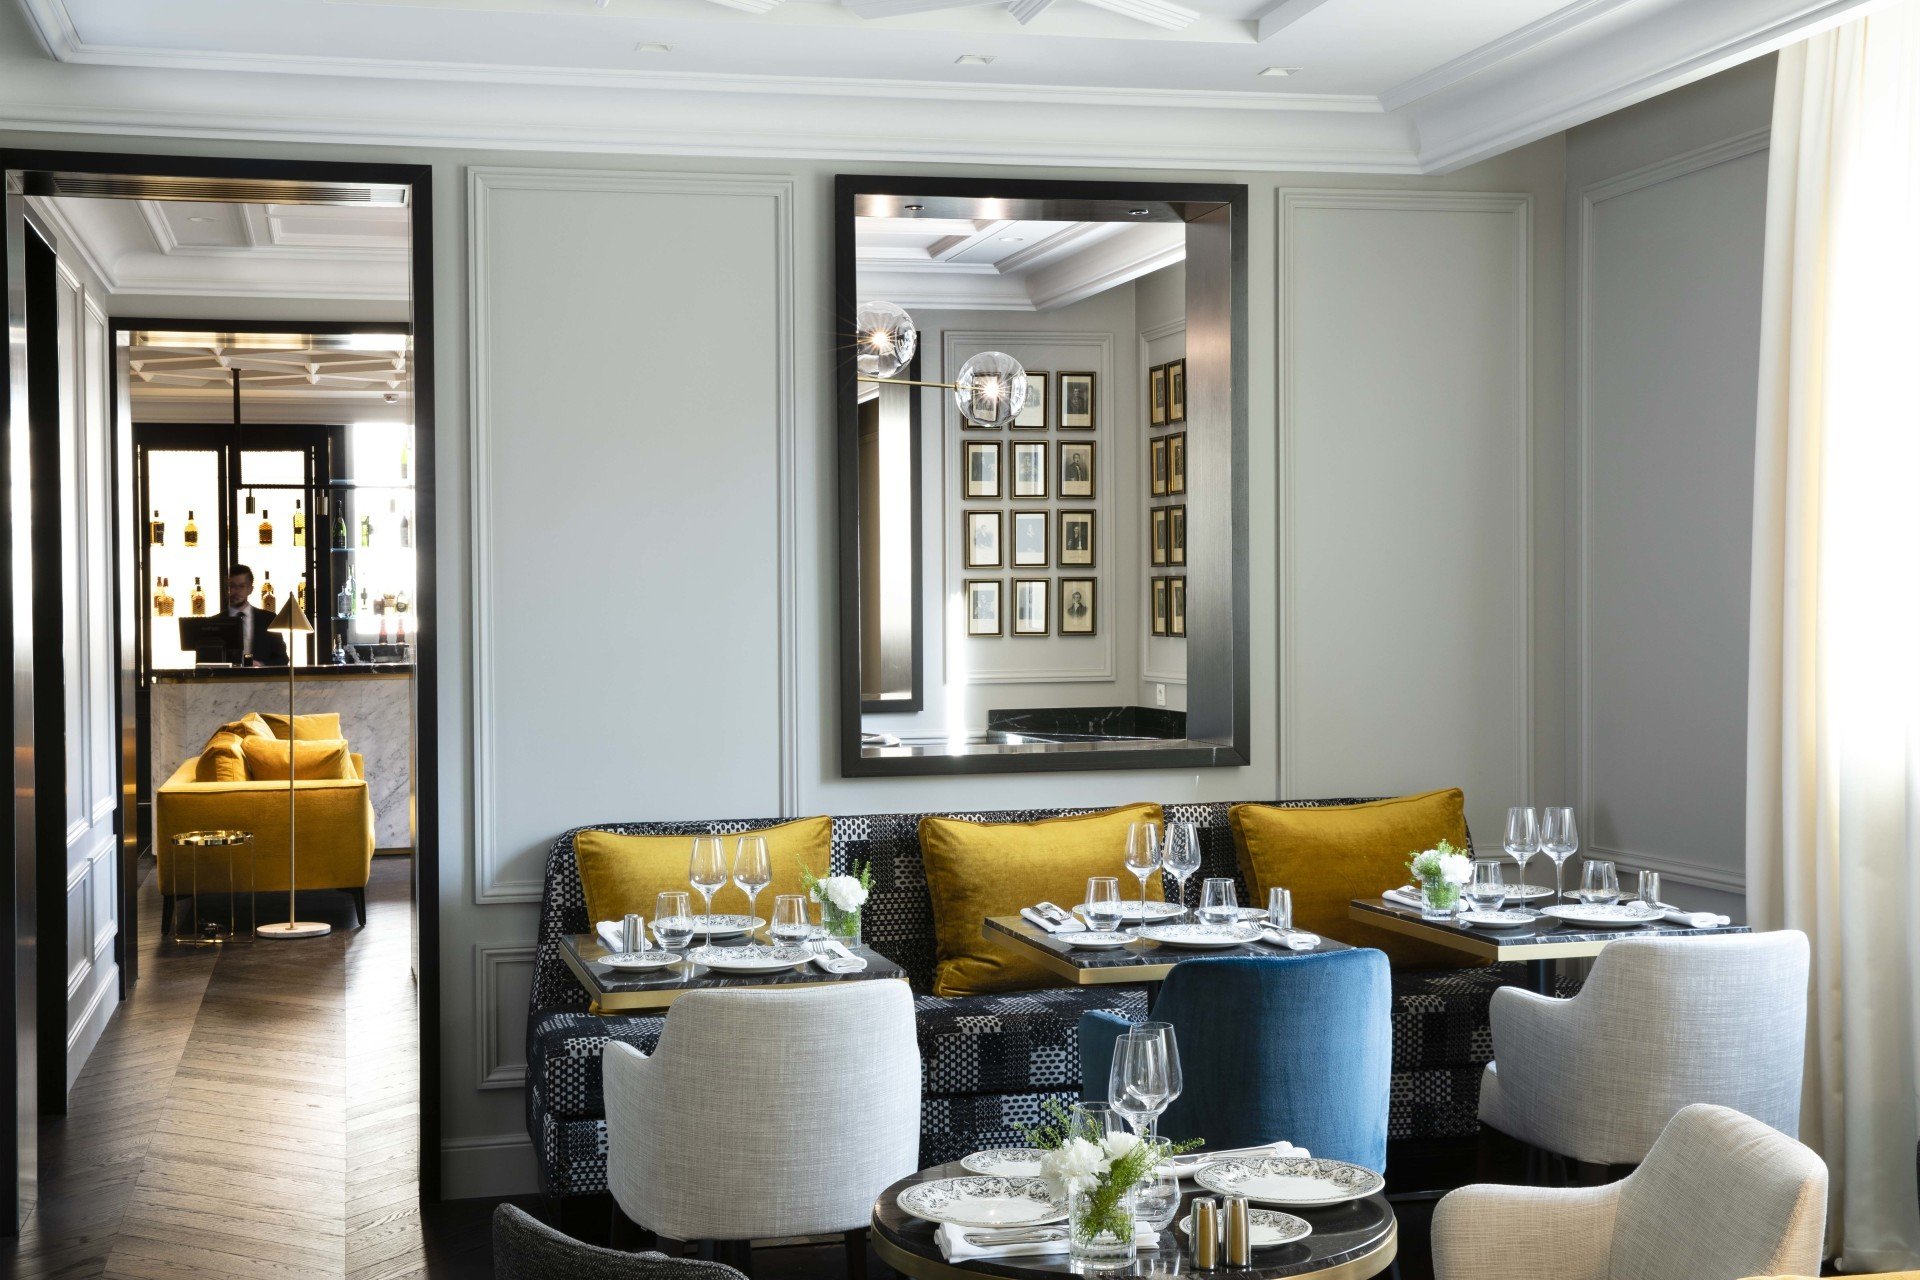 Restaurant Hôtel Le Damantin à Paris designé par le studio d'architecture d'intérieur français jean-philippe nuel, ambiance chic et décoration luxueuse